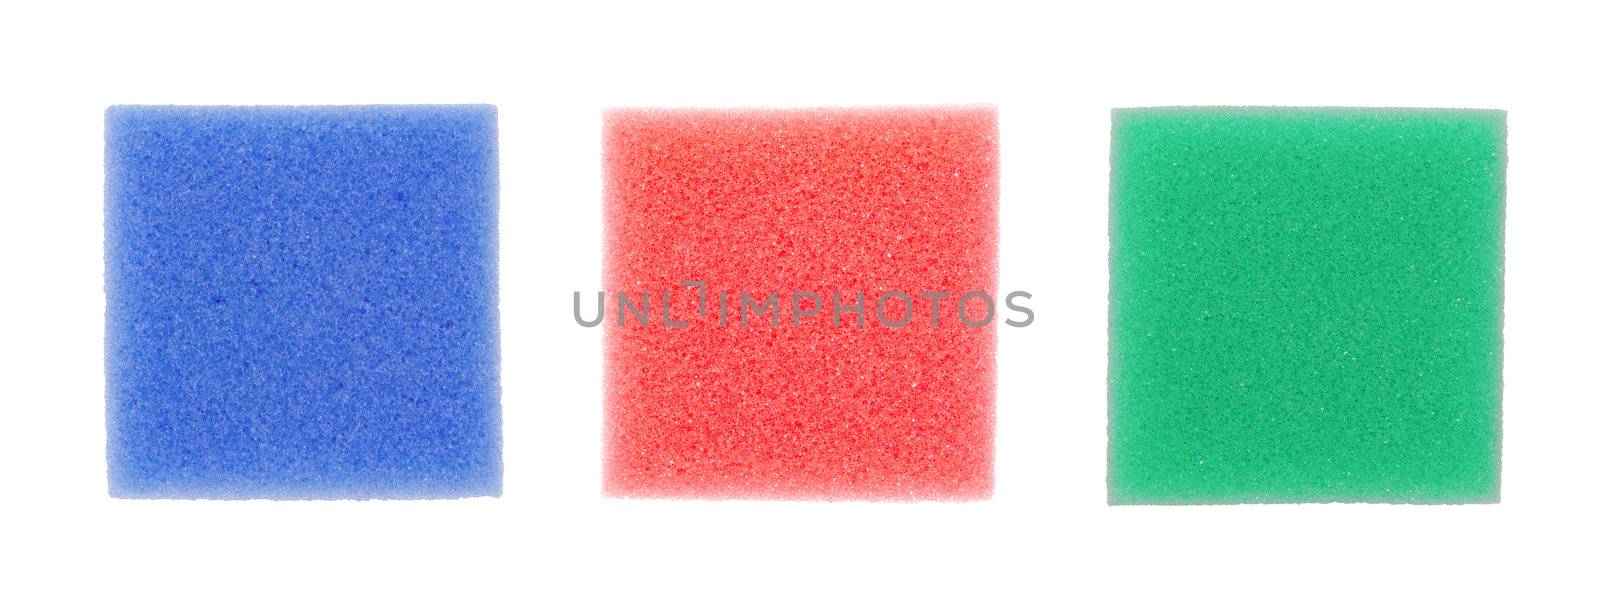 colorful sponges by zkruger